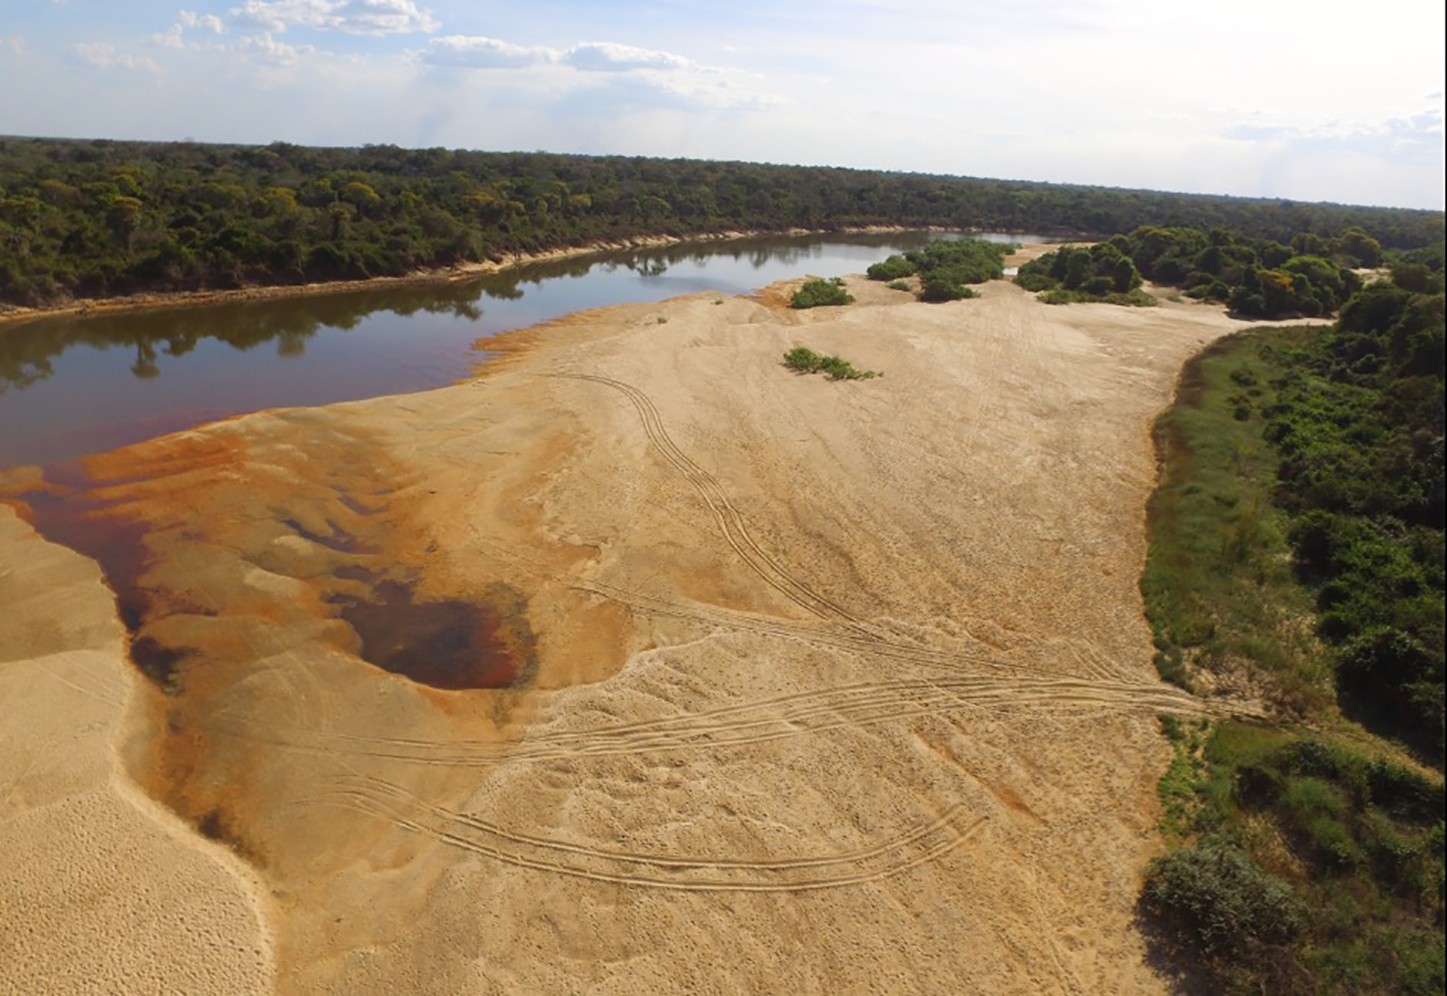 Intervenções em rios têm causado danos ambientais